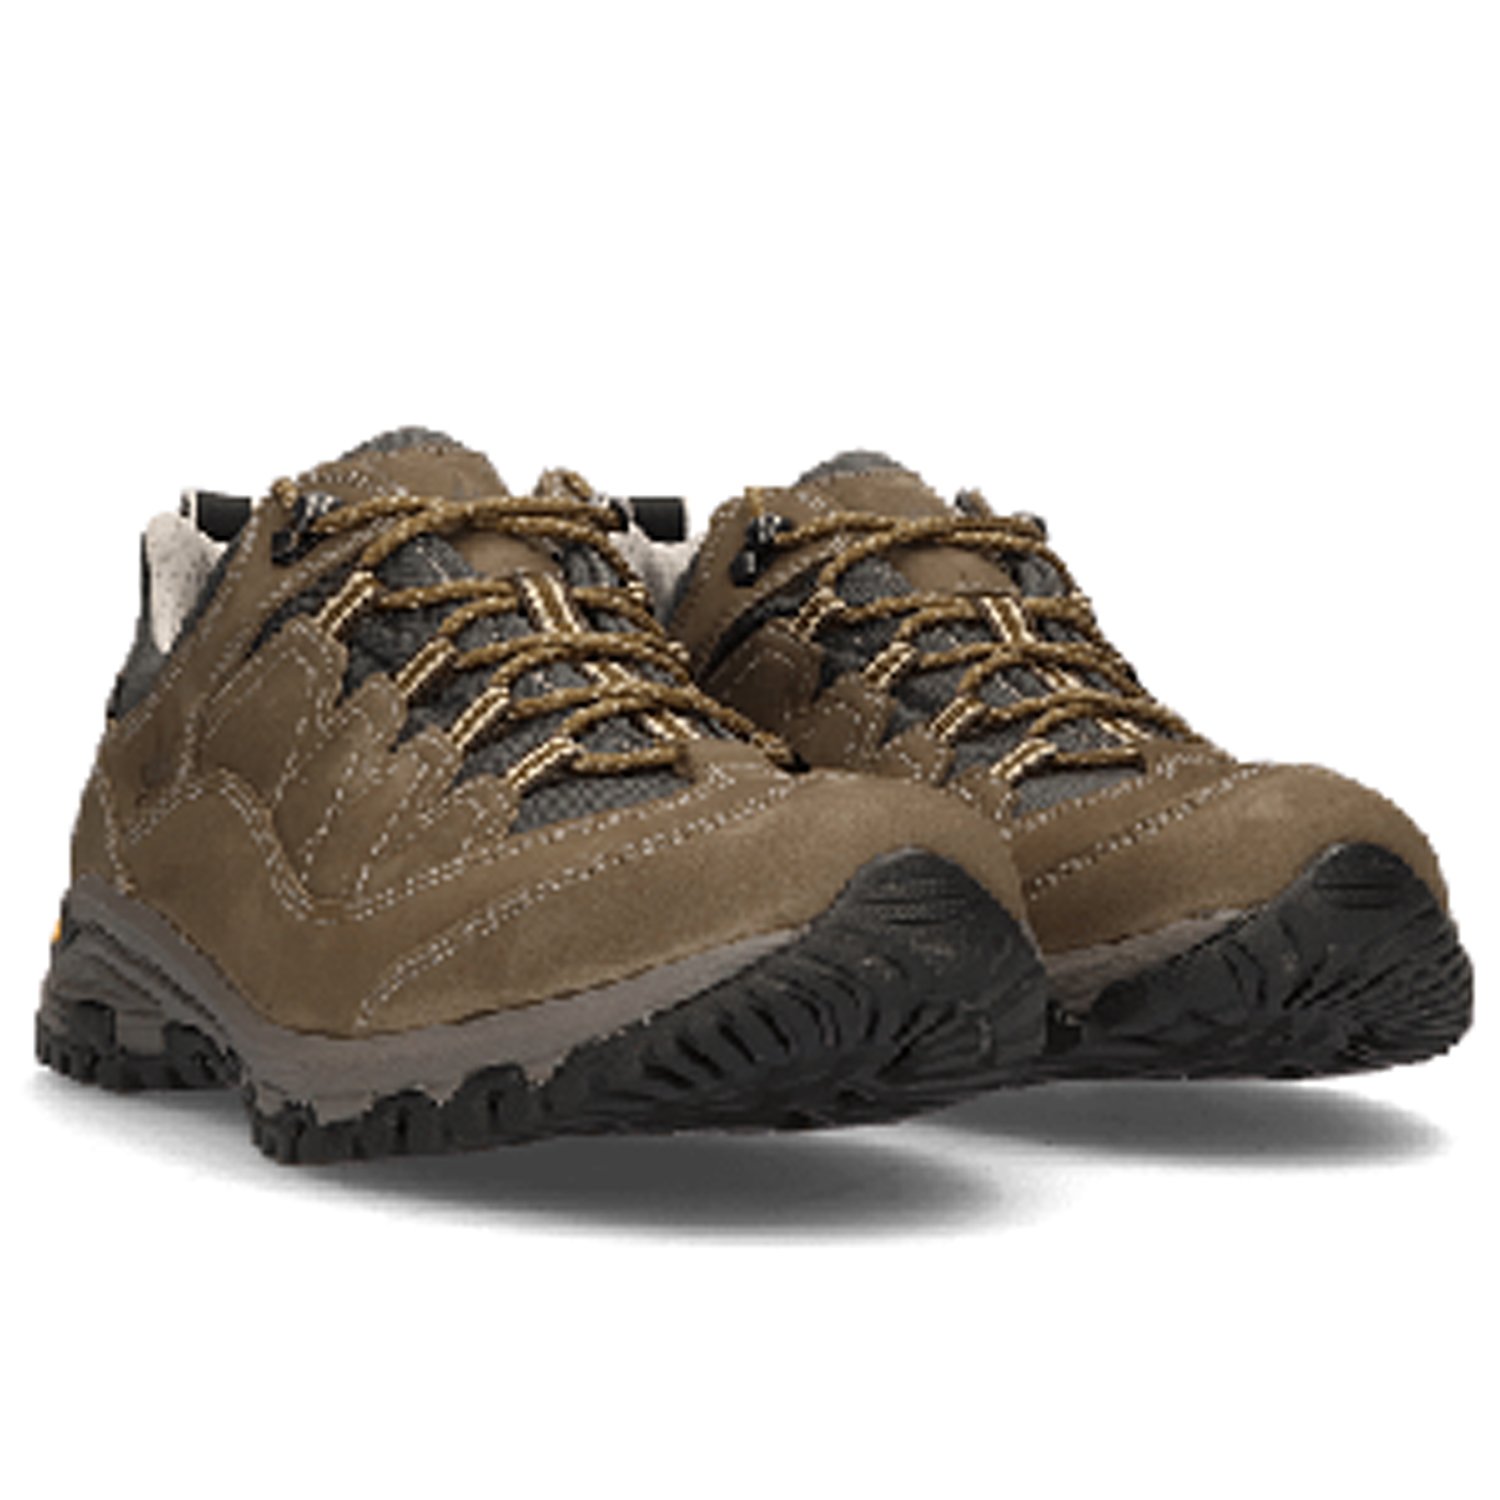 Ботинки Lomer Sella Ii Mtx Nubuck Olive, мужской, коричневый, 2022-23, 30042_A_02 ботинки lomer bio naturale canvas jasper 39 eu